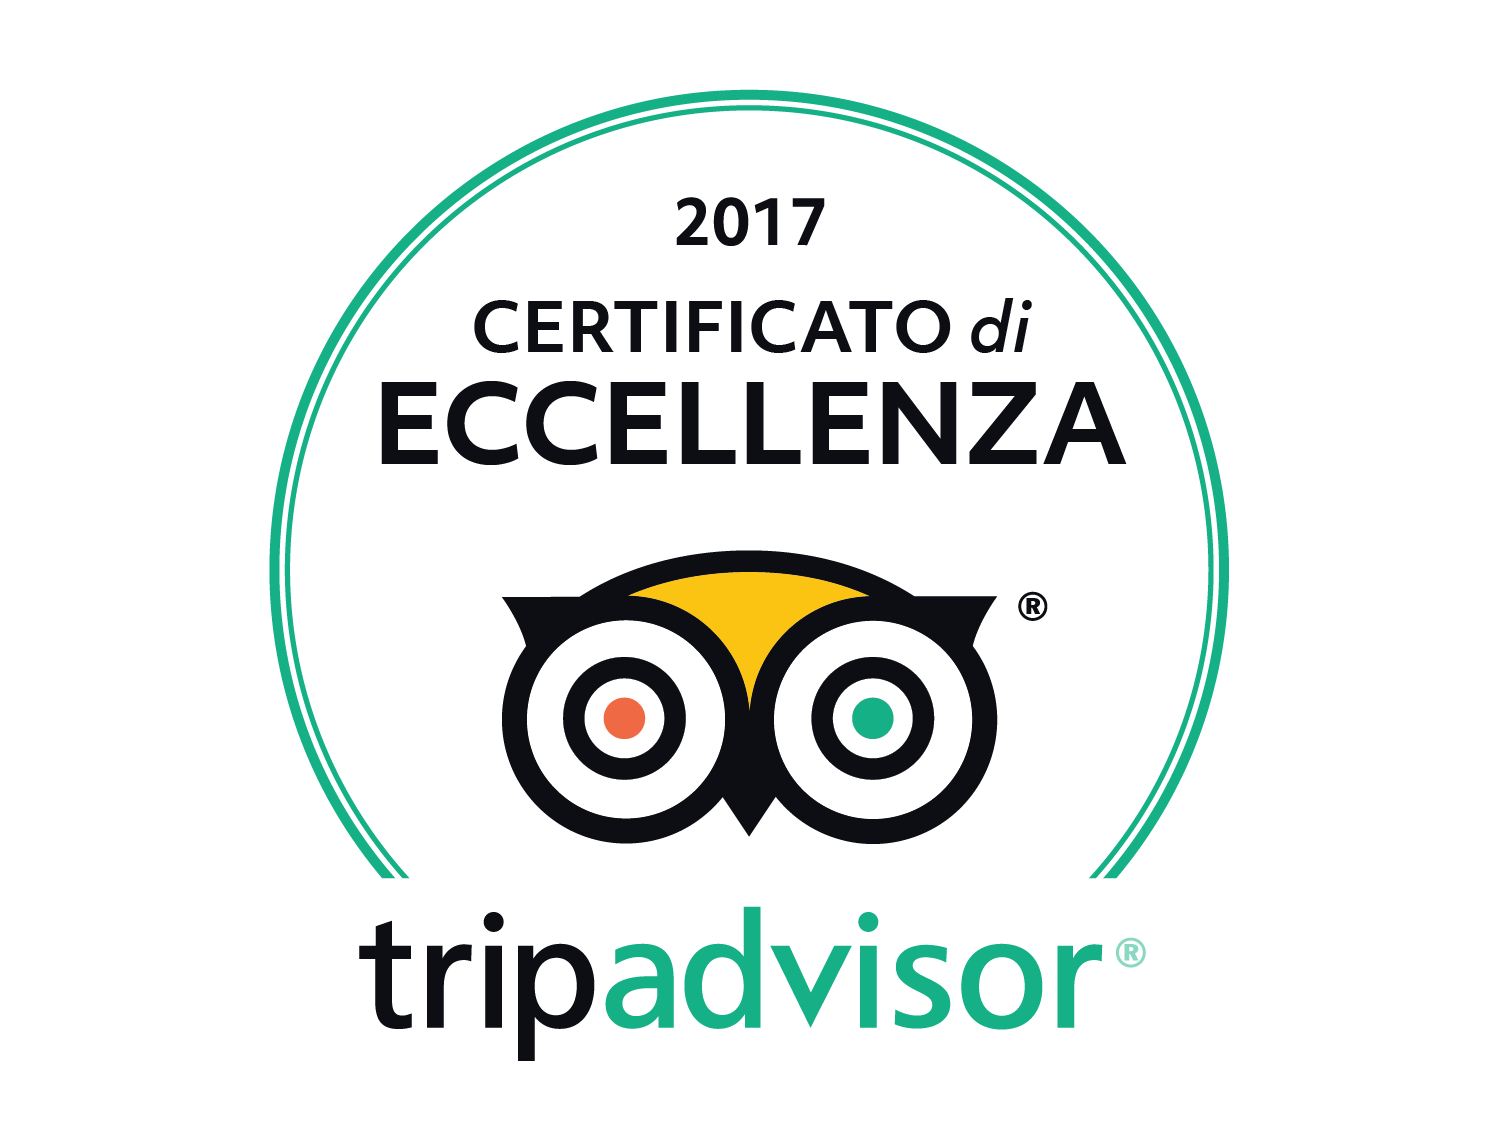 Certificato Eccellenza 2017 TripAdvisor